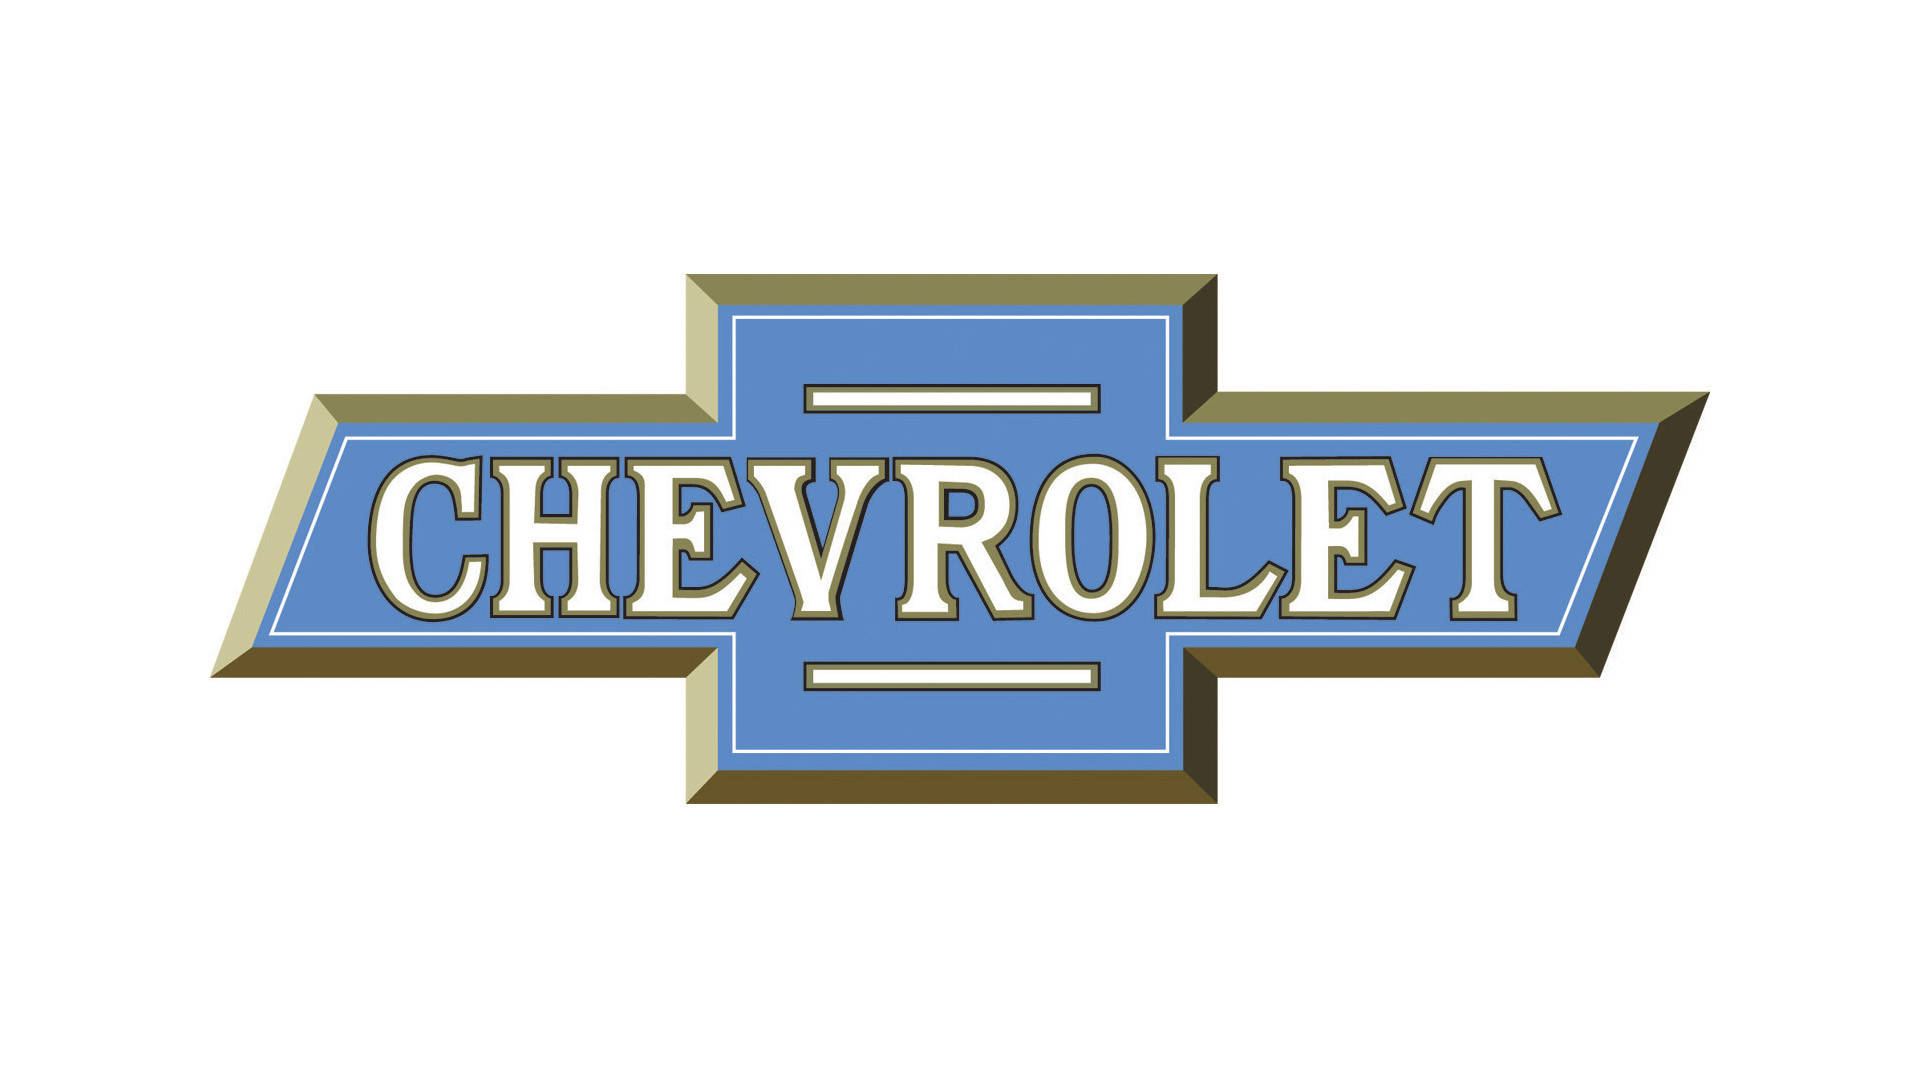 1914 Chevrolet-logoet Wallpaper